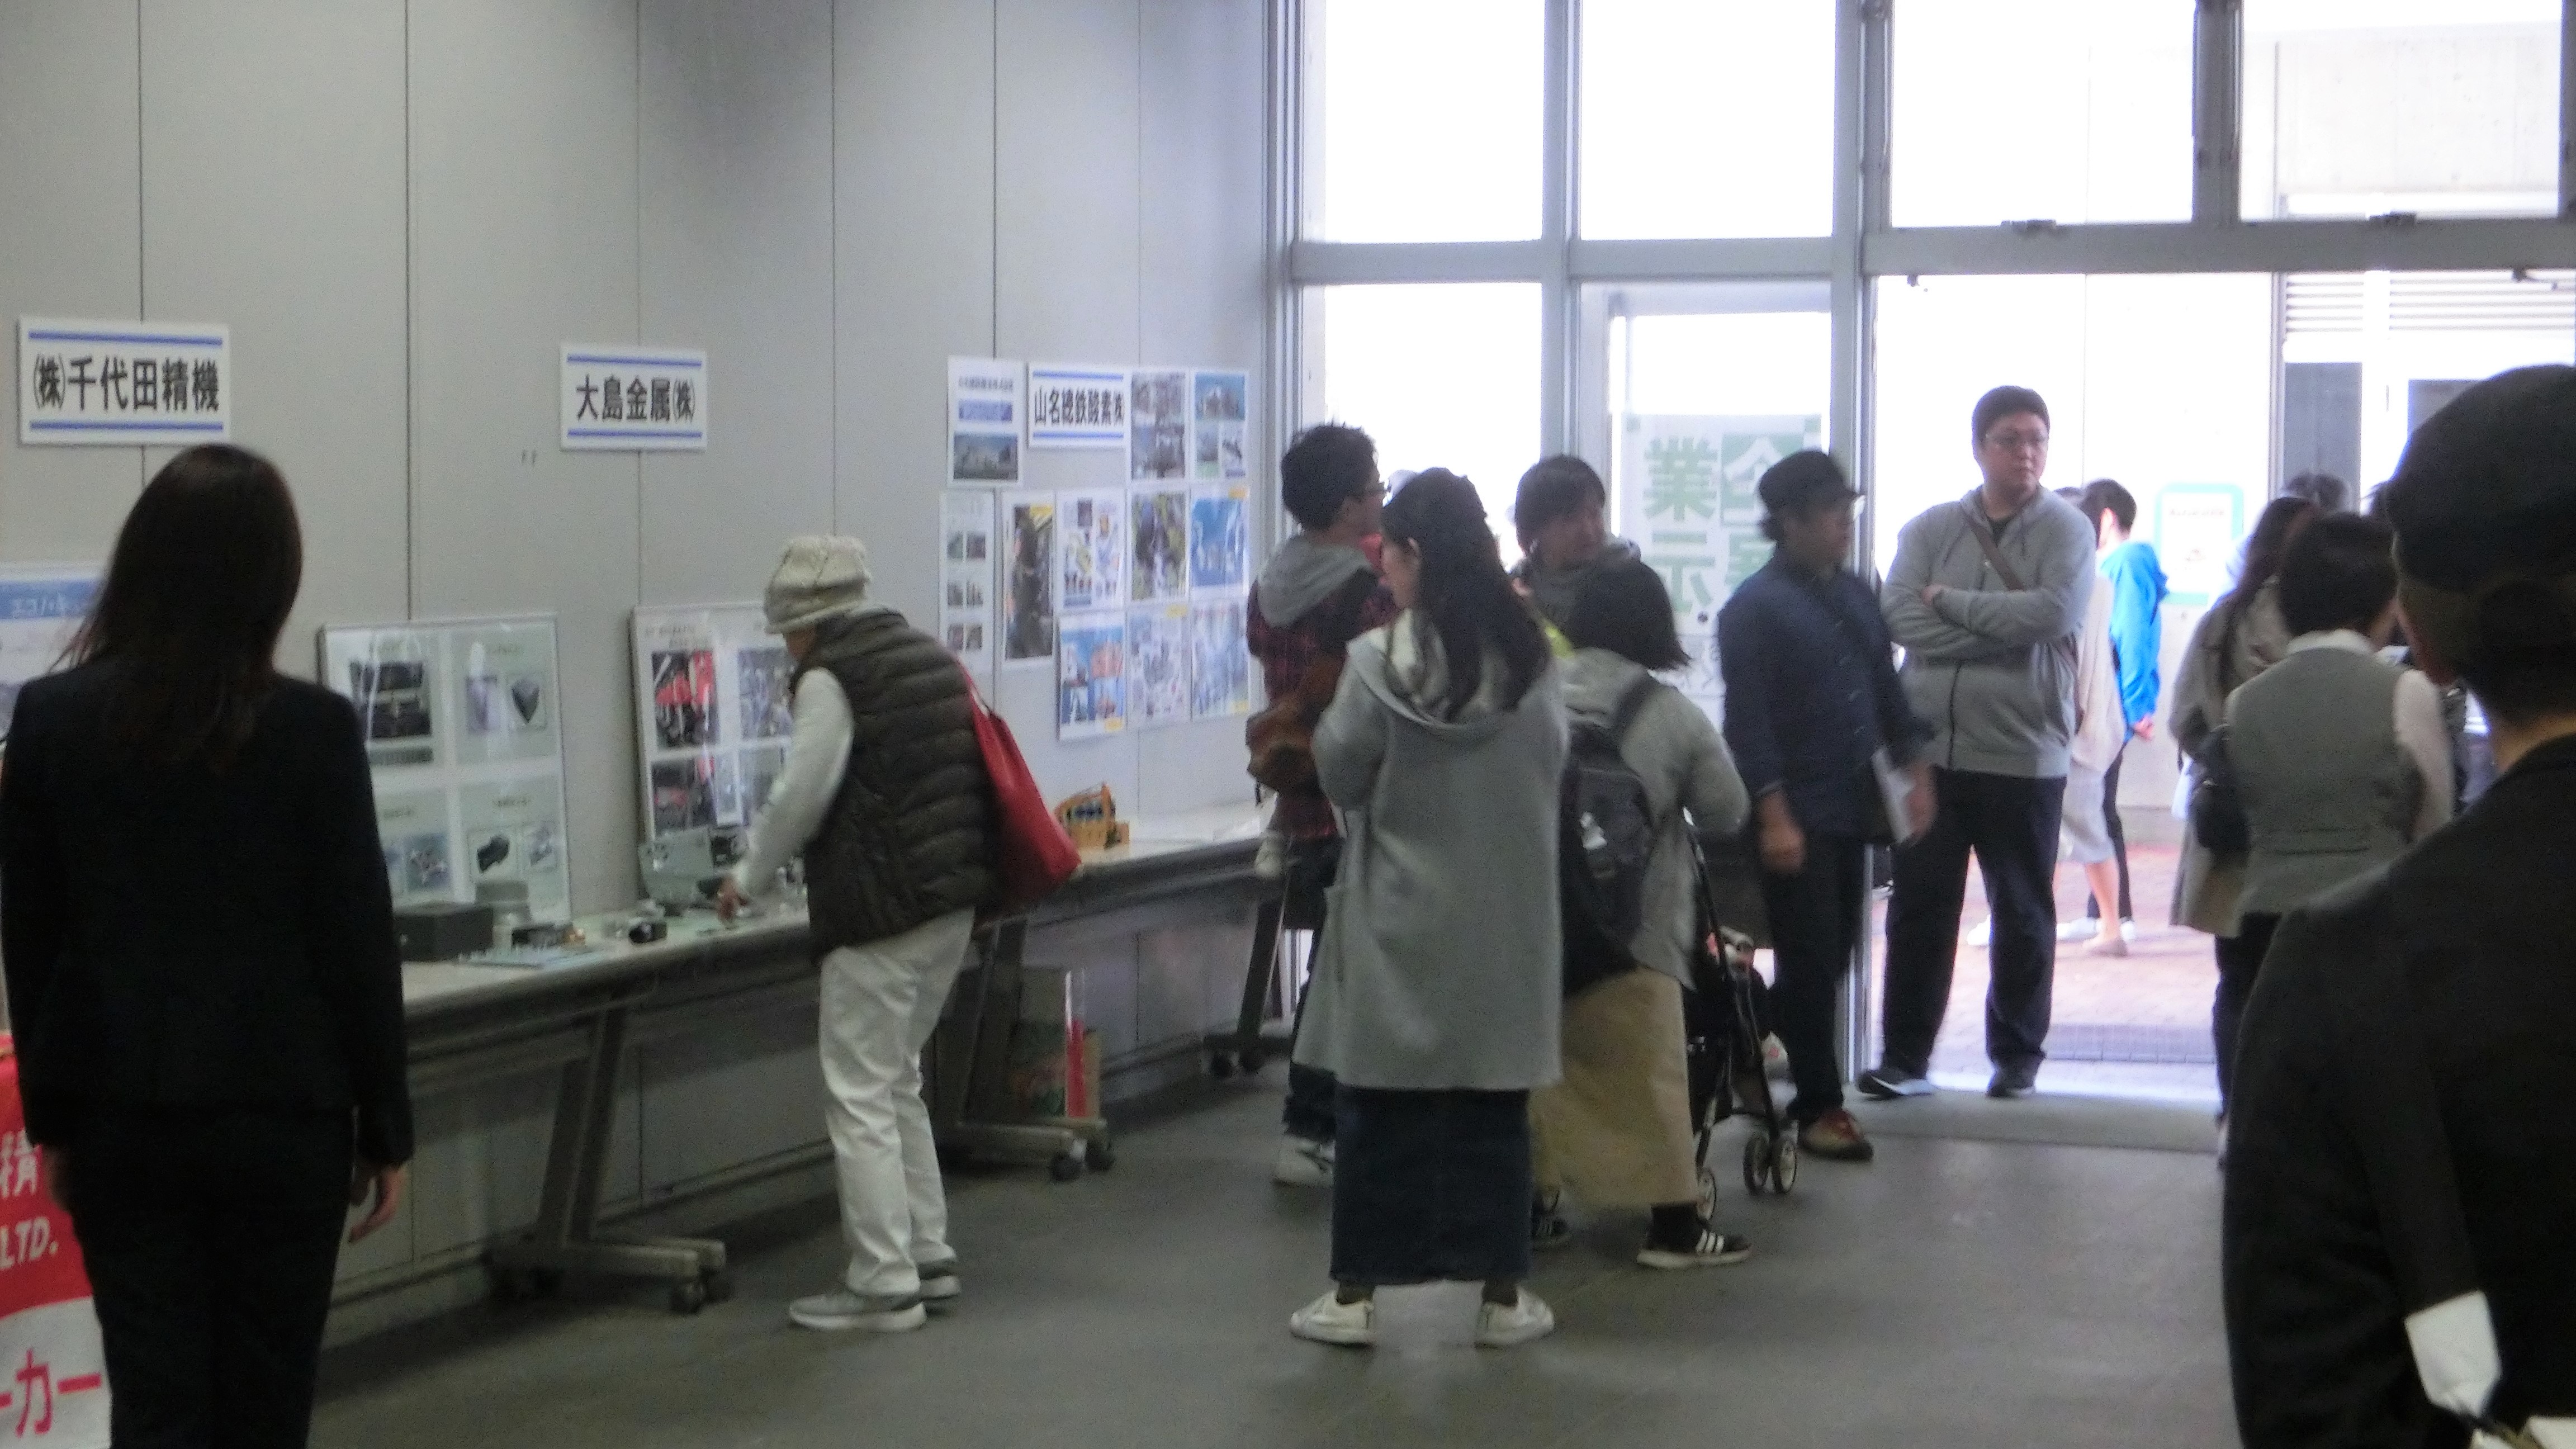 神戸市内工業系学校での企業展示2019 開催しました